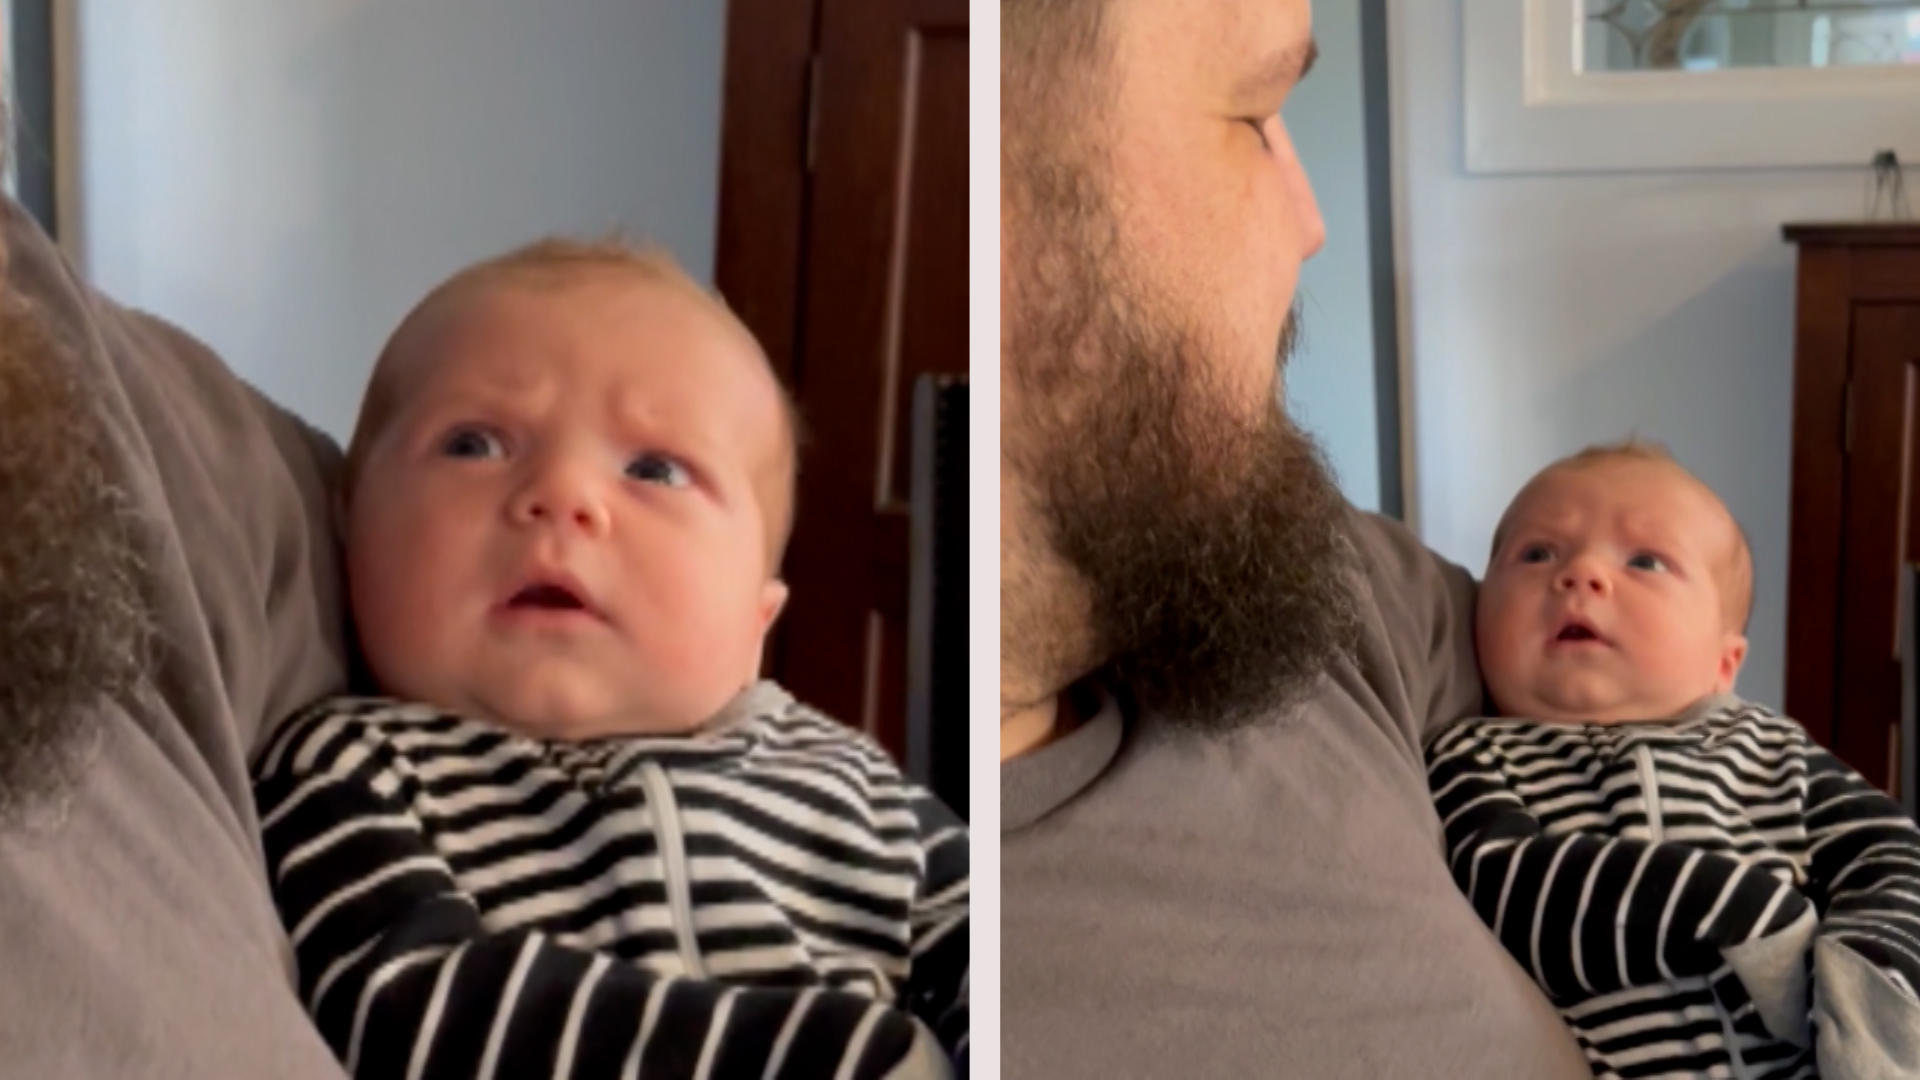 Bei diesem Anblick entgleist dem Baby das Gesicht Ach du heiliger Bimm-Bart!